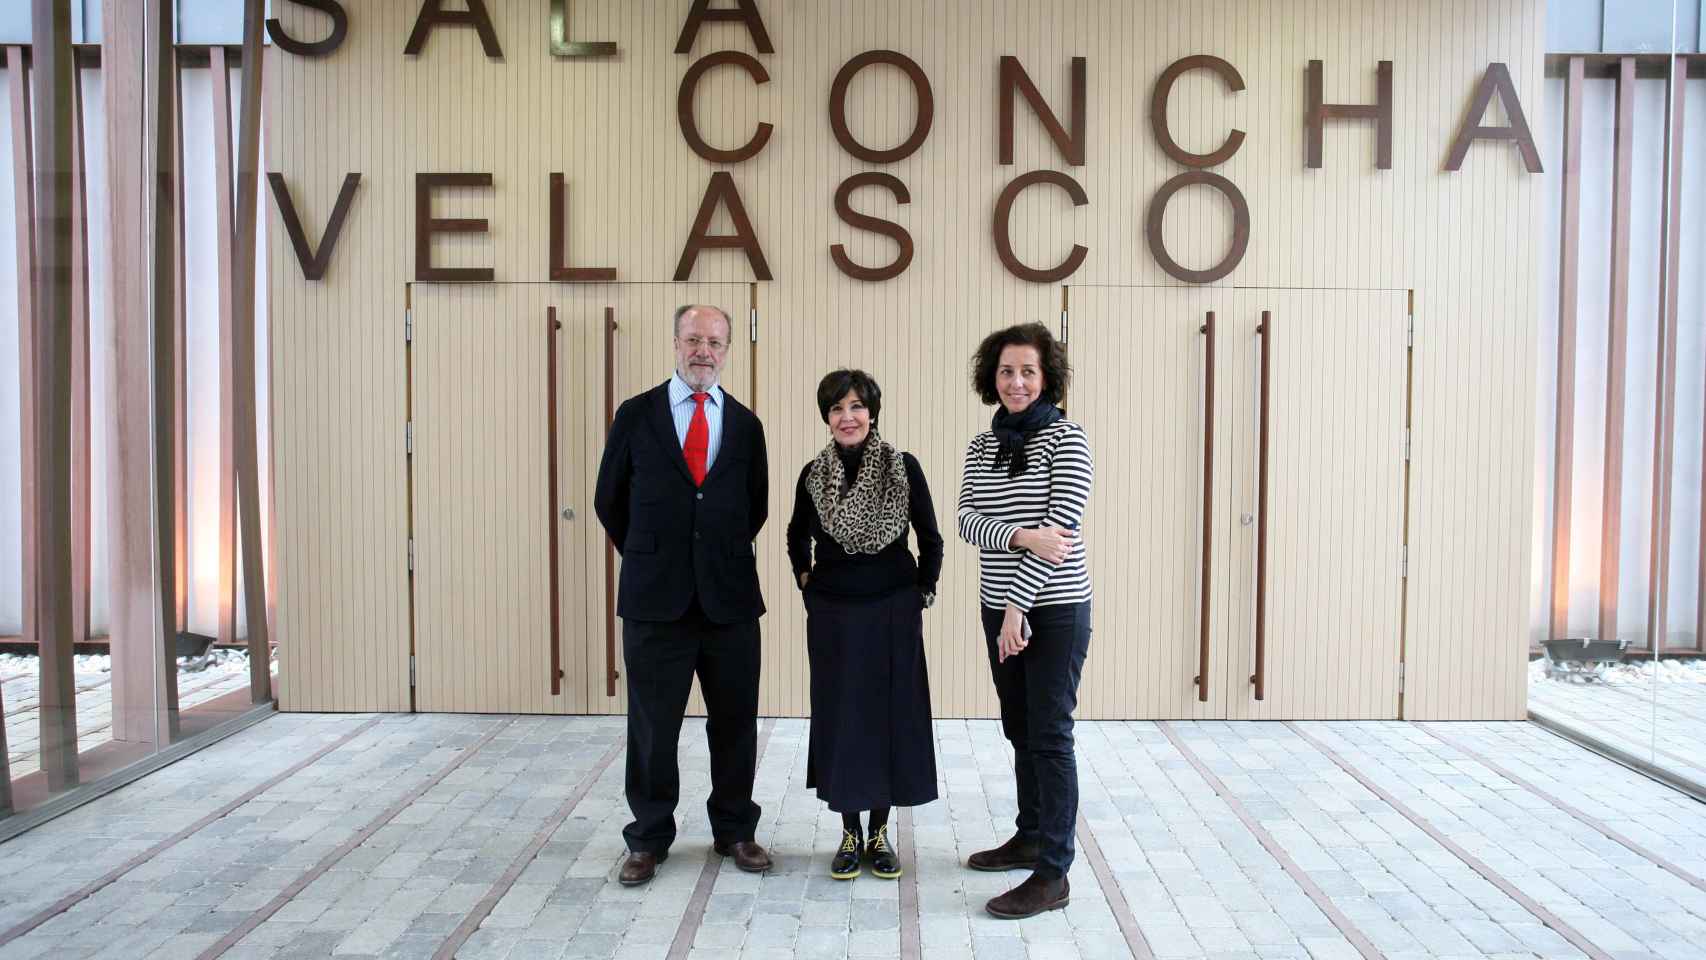 a actriz Concha Velasco visitó en 2015 el Laboratorio de las Artes (Lava) que lleva su nombre, acompañada por el alcalde de Valladolid, Javier León de la Riva, y la concejala de Cultura, Mercedes Cantalapiedra